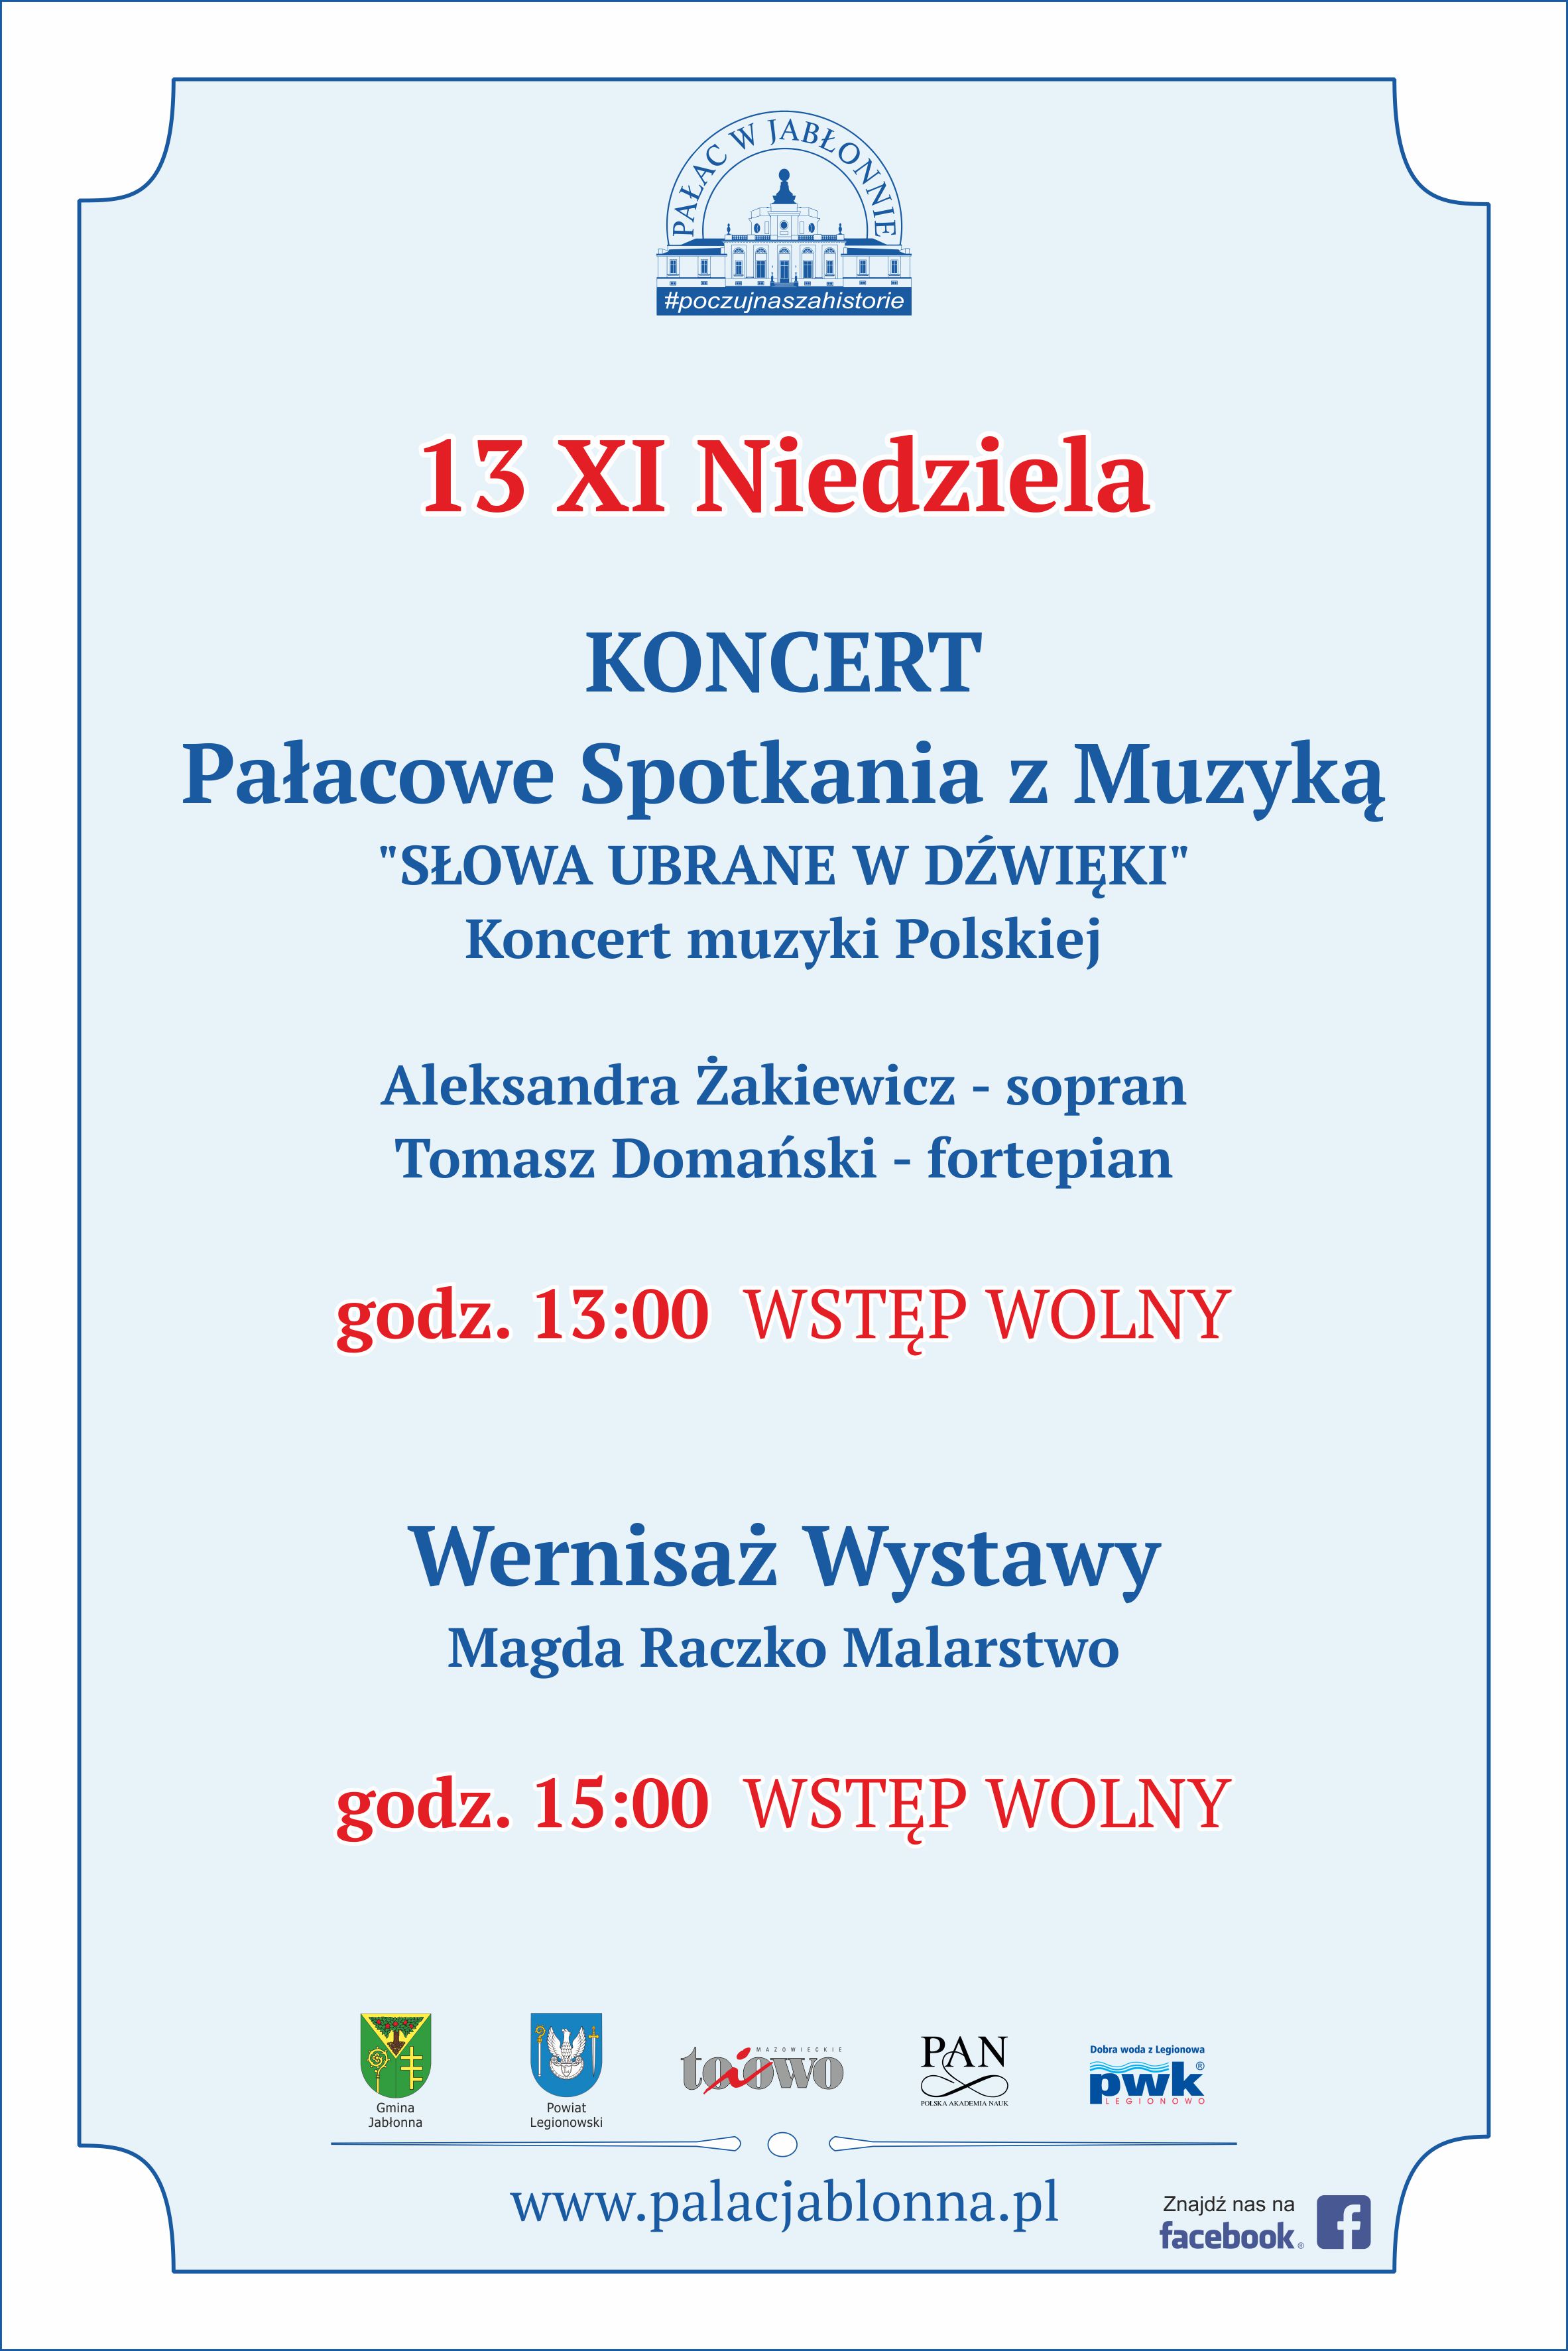 13.11.2022 Niedziela - Pałacowe Spotkania z Muzyką - koncert muzyki polskiej 